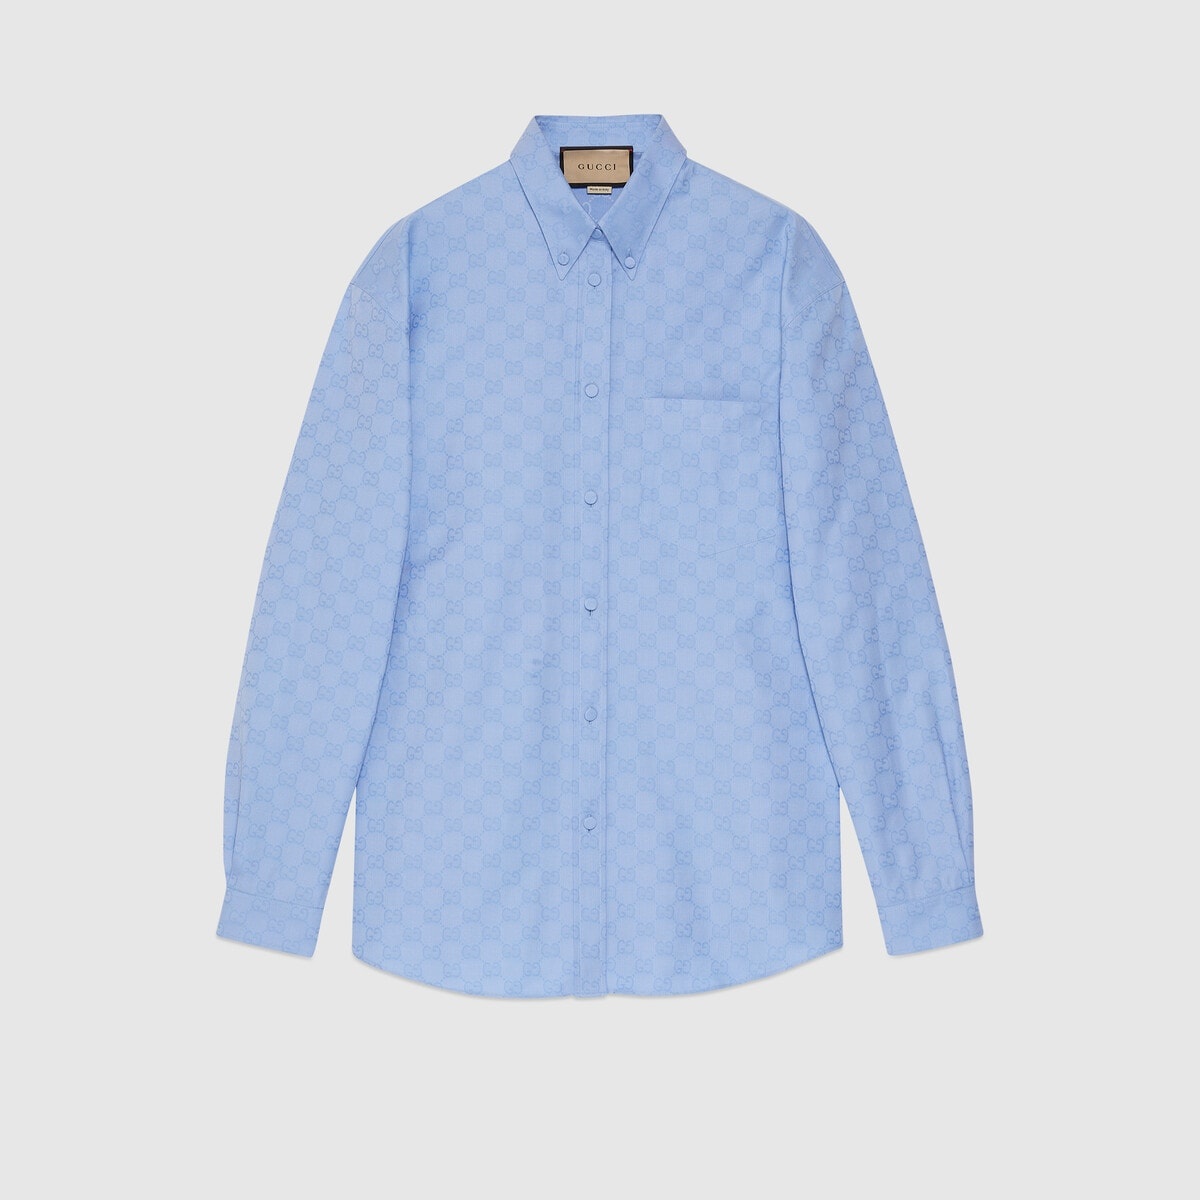 GG Supreme cotton shirt - 1